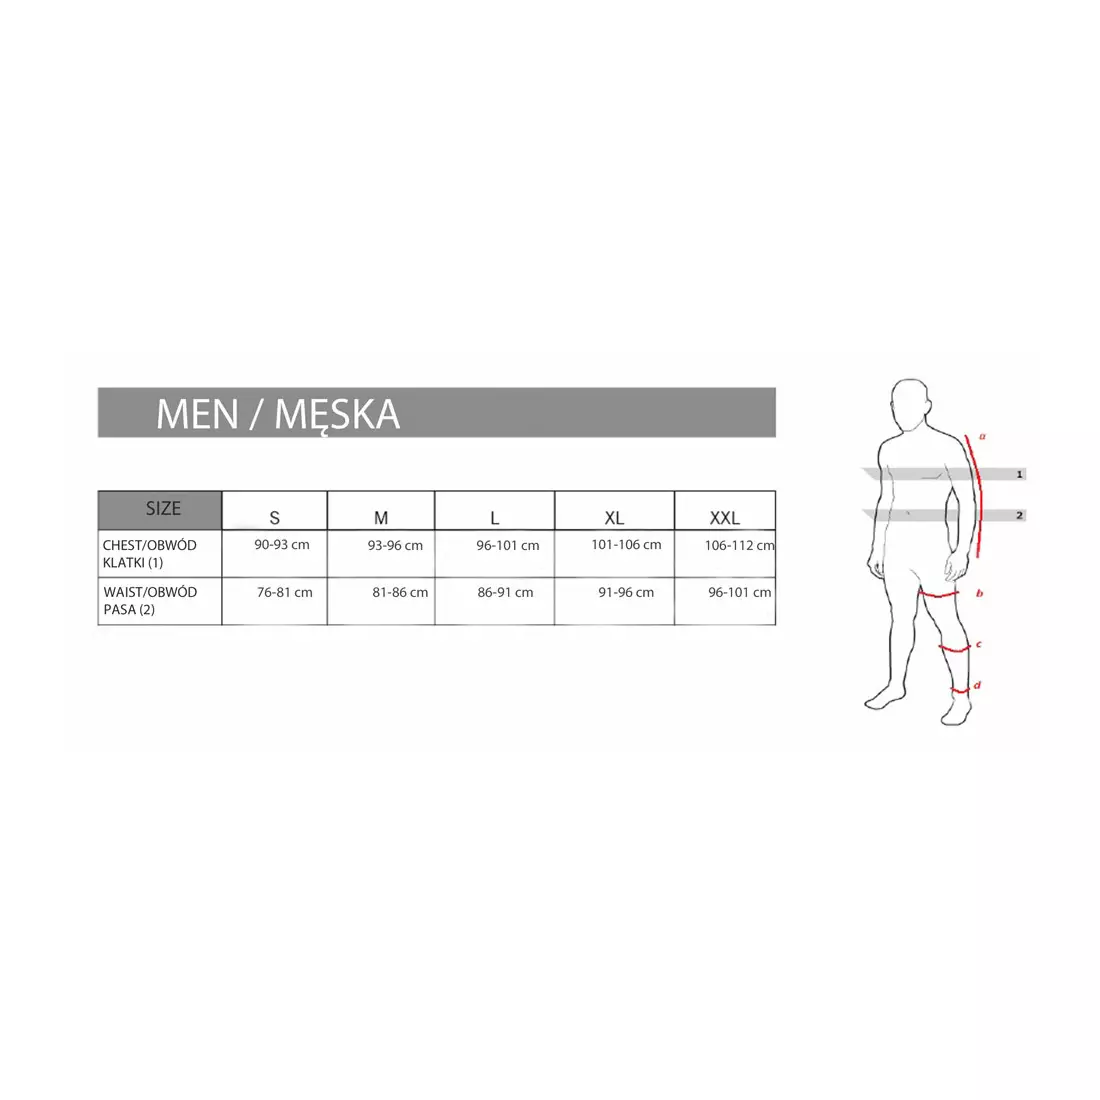 Pantaloni scurți pentru ciclism bărbați FDX 1600, negru - cusătură fluor